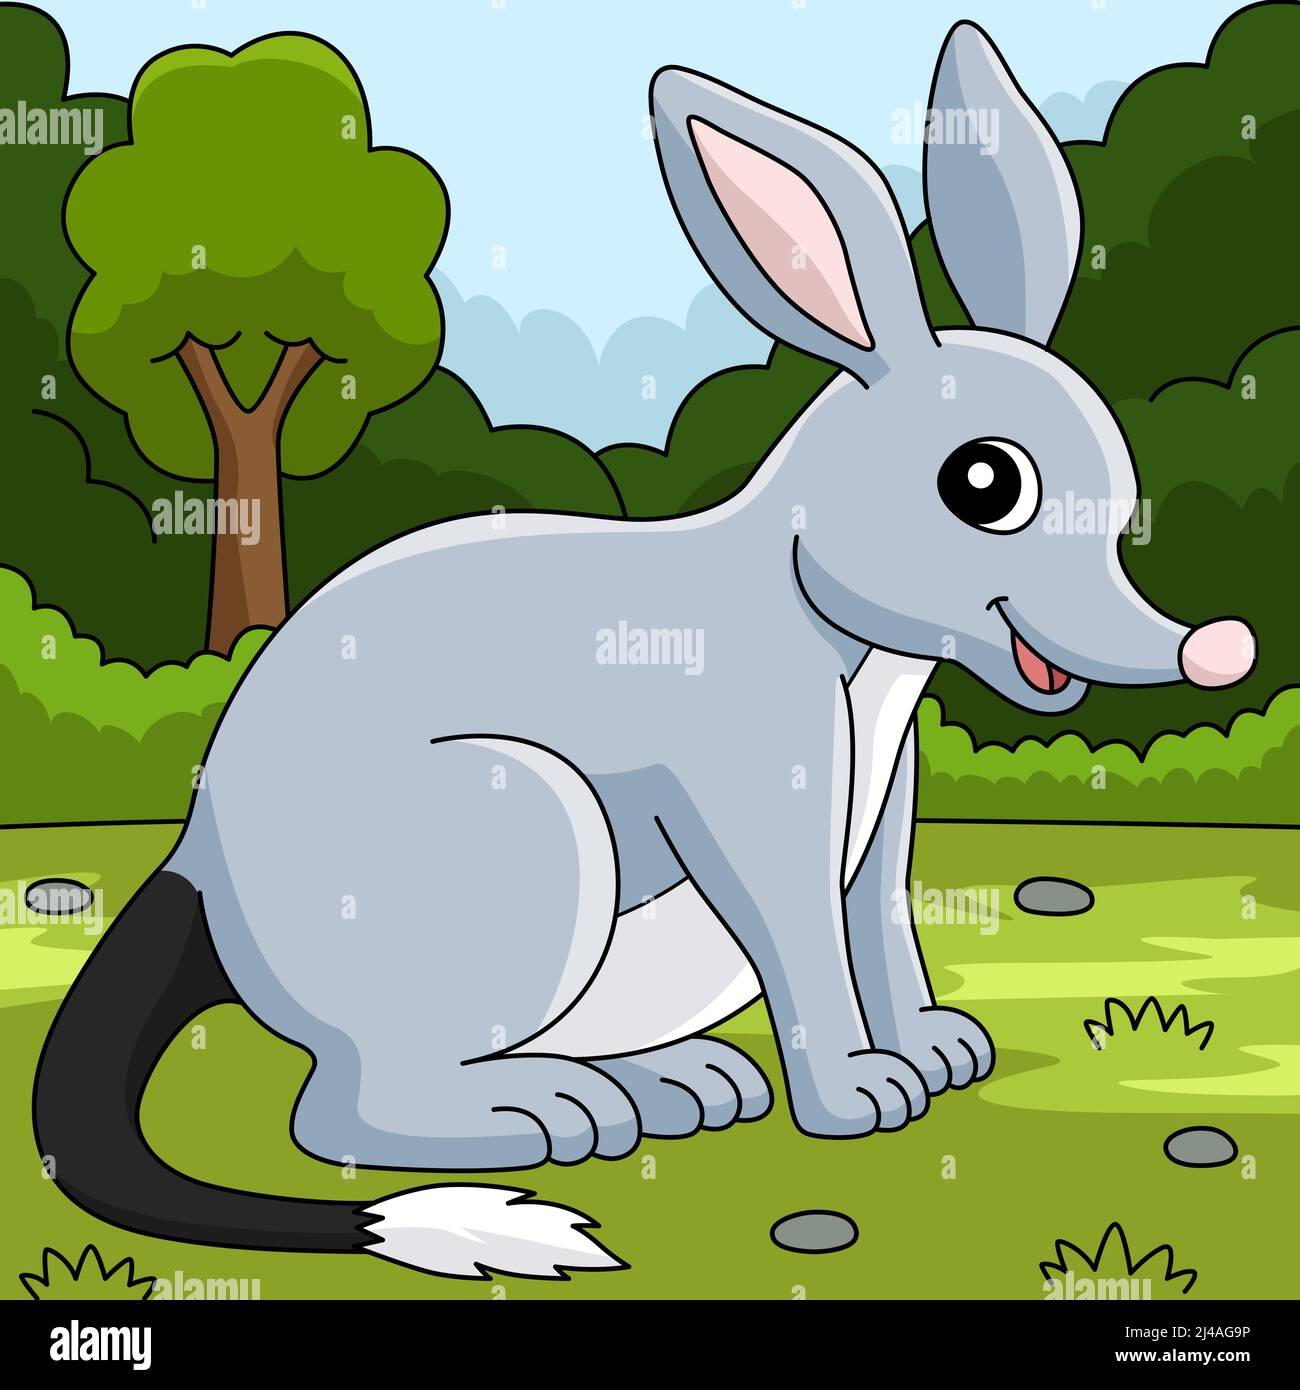 Ilustración de dibujos animados de color de Bilby Animal Ilustración del Vector